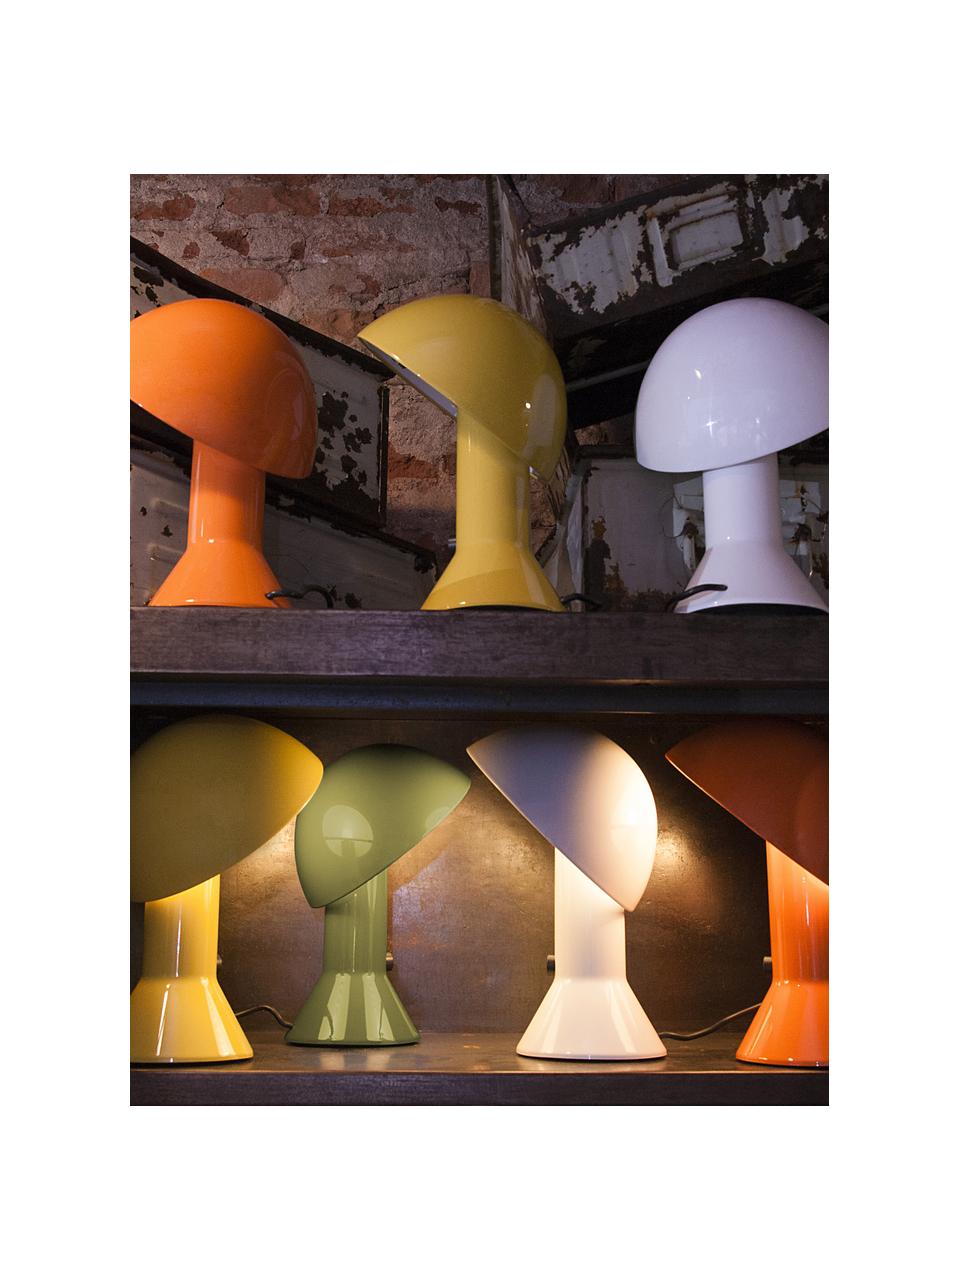 Lampada da tavolo piccola con paralume orientabile Elmetto, Plastica laccata, Giallo sole, Ø 22 x Alt. 28 cm